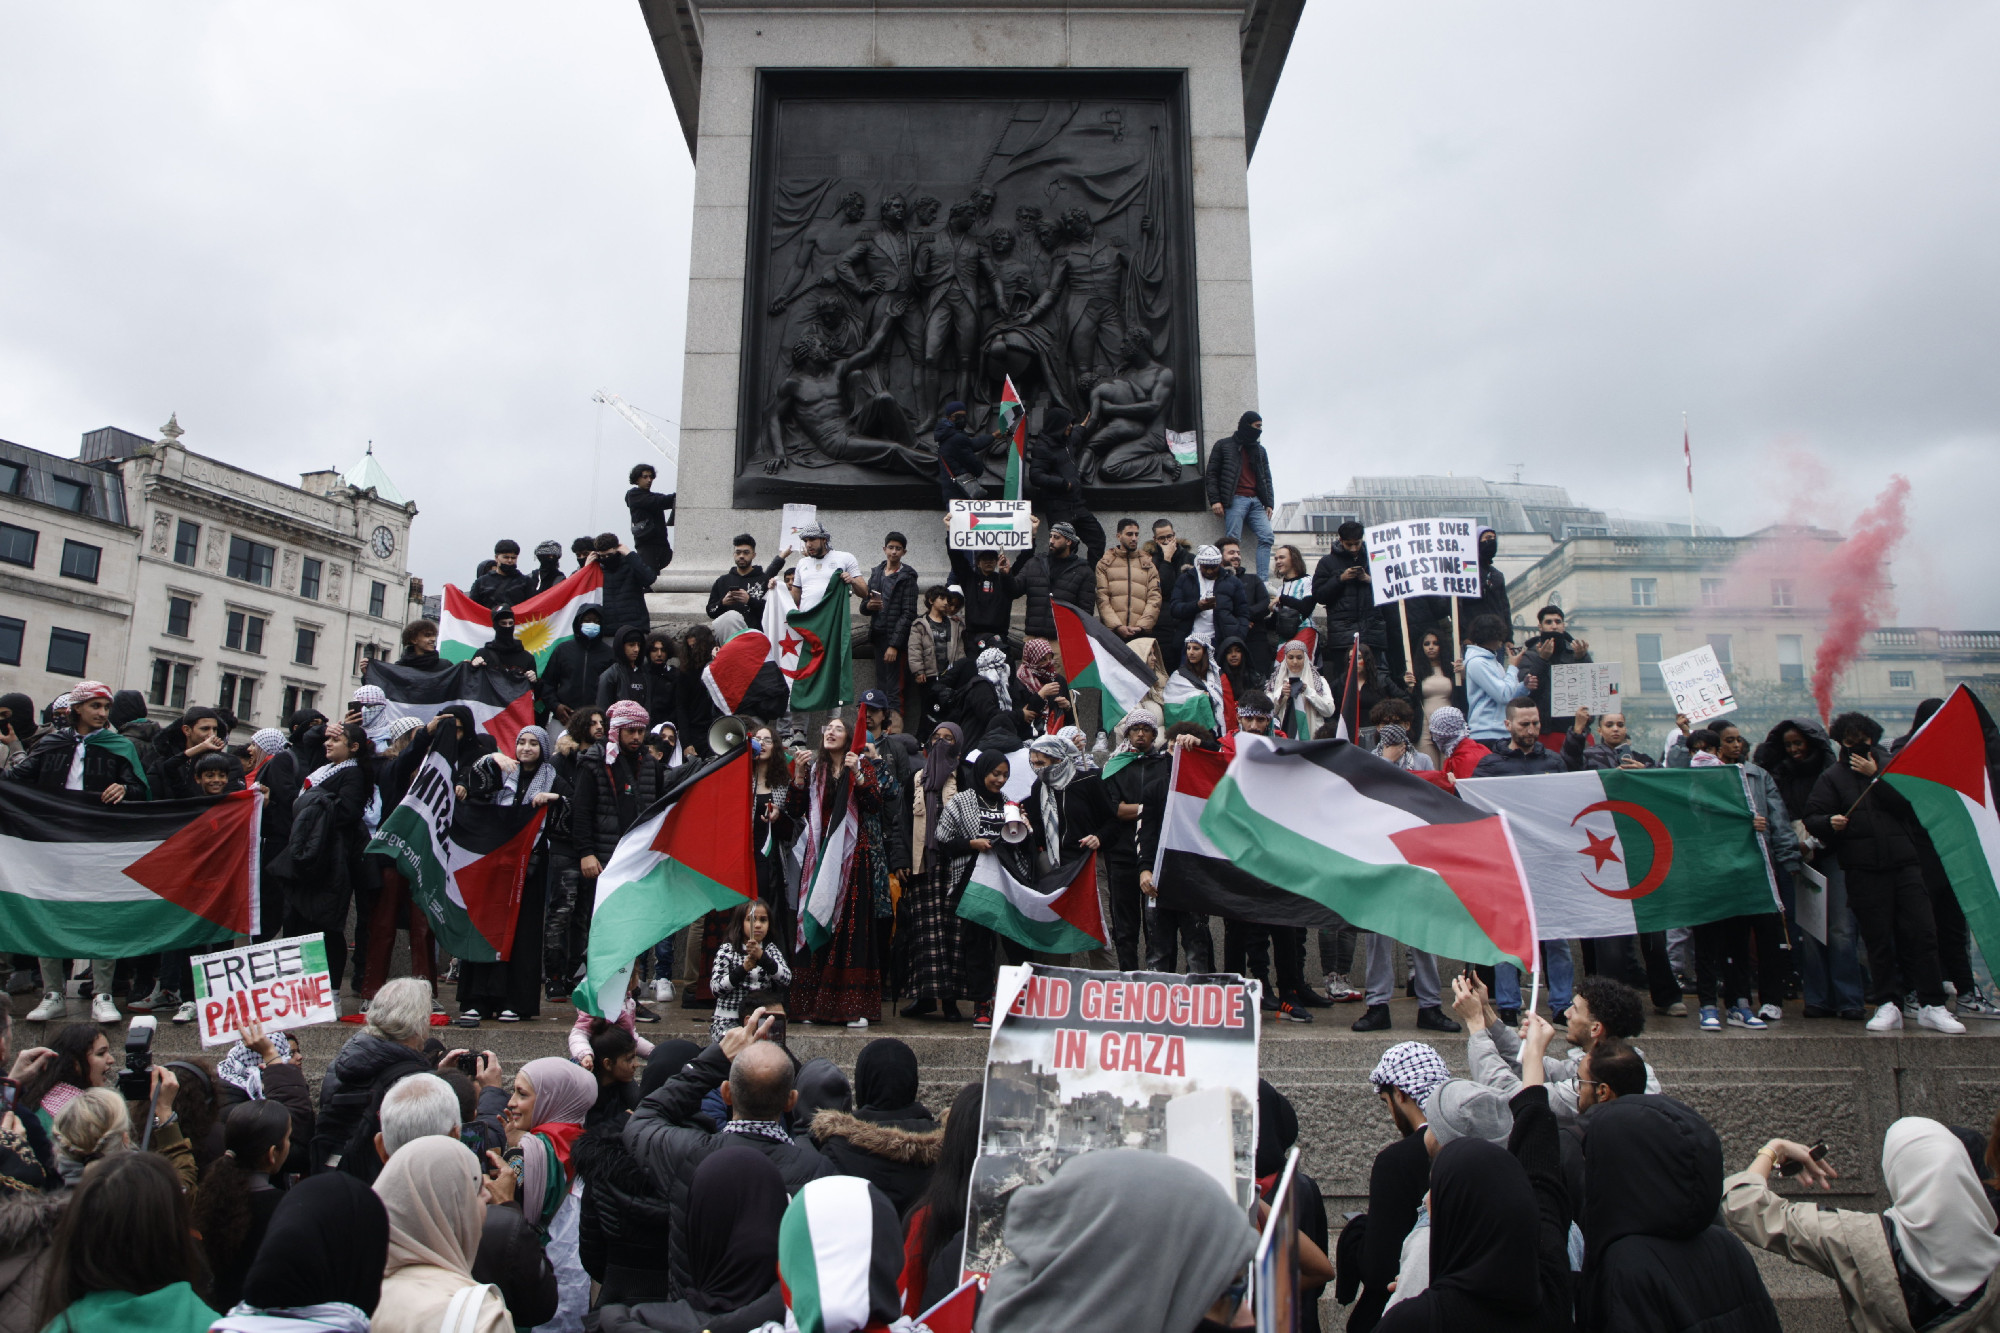 Kitiltották a palesztinpárti tüntetőket a londoni háborús emlékmű környékéről